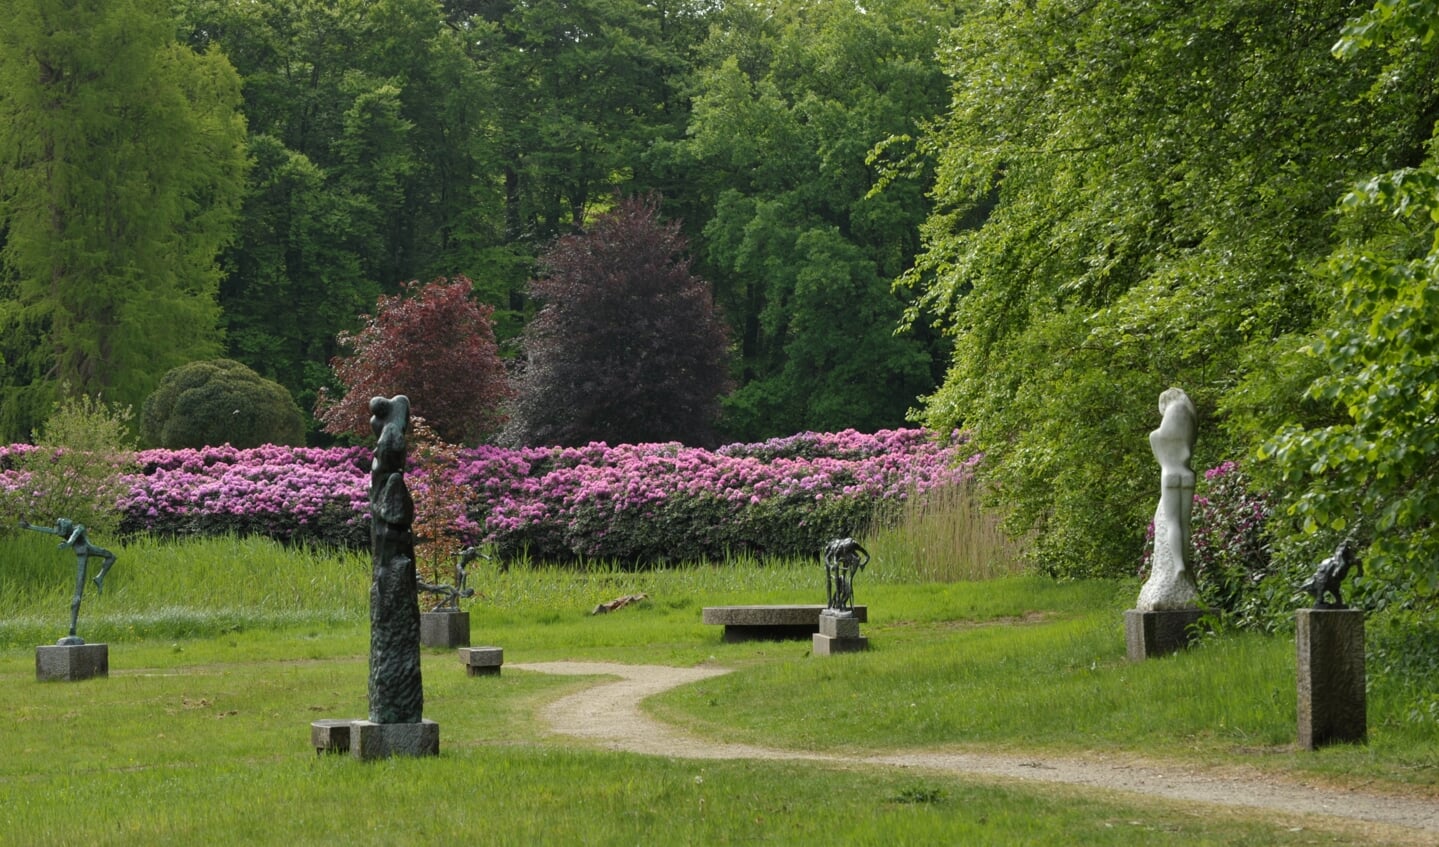 Beelden die zich evengoed thuis voelen in een rustieke natuurlijke omgeving als in het bruisende centrum van een dynamische stad. Het park is fraai gelegen in de Stichtse Lustwarande, een uitgestrekt wandelgebied ten oosten van Utrecht.